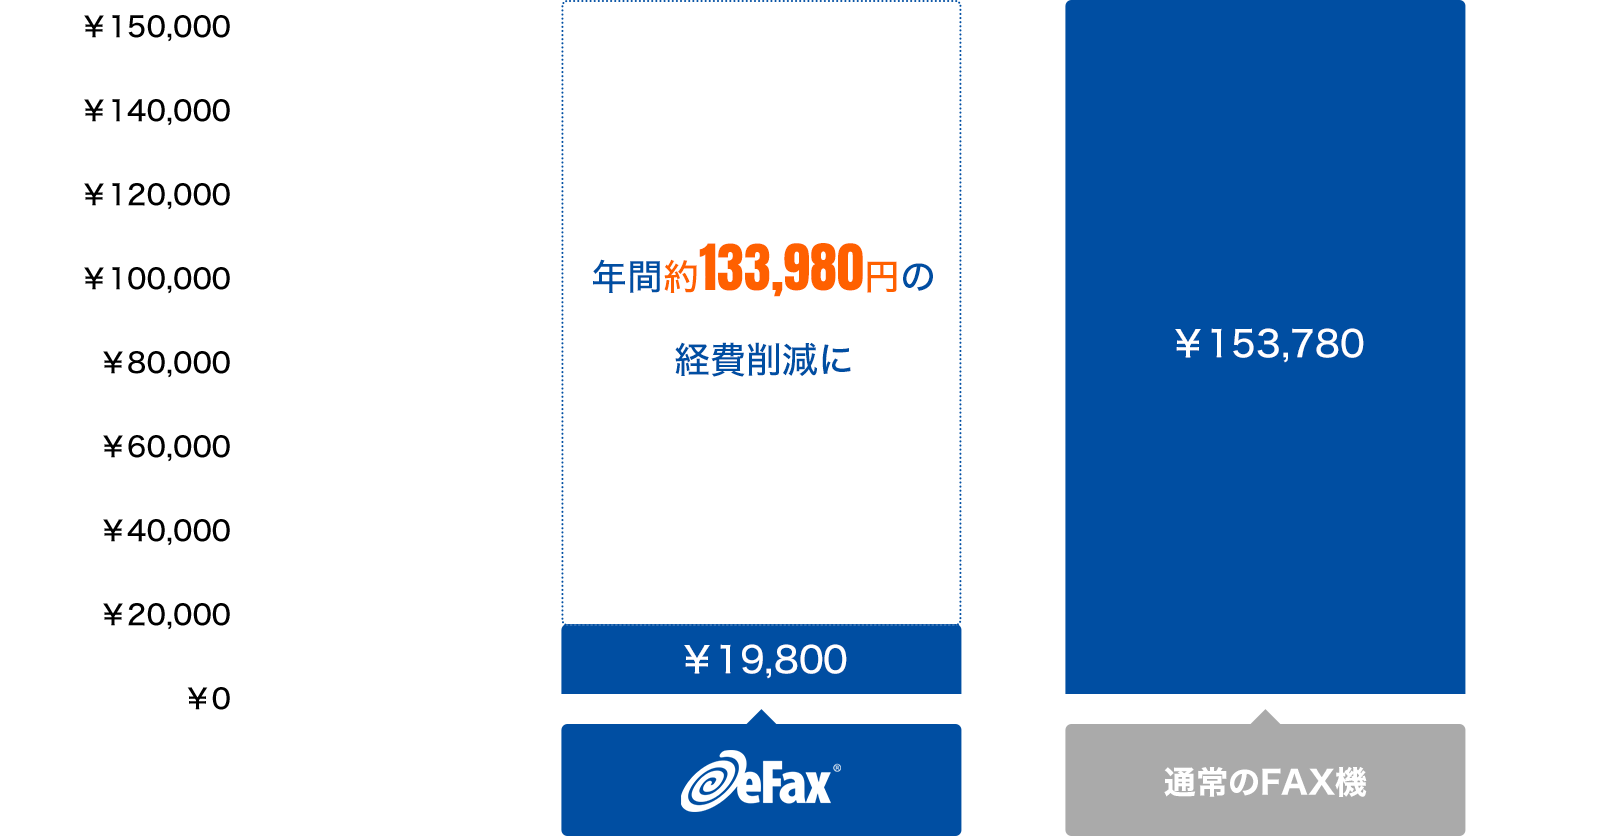 ファックス機との比較表、大幅なコスト削減を実現